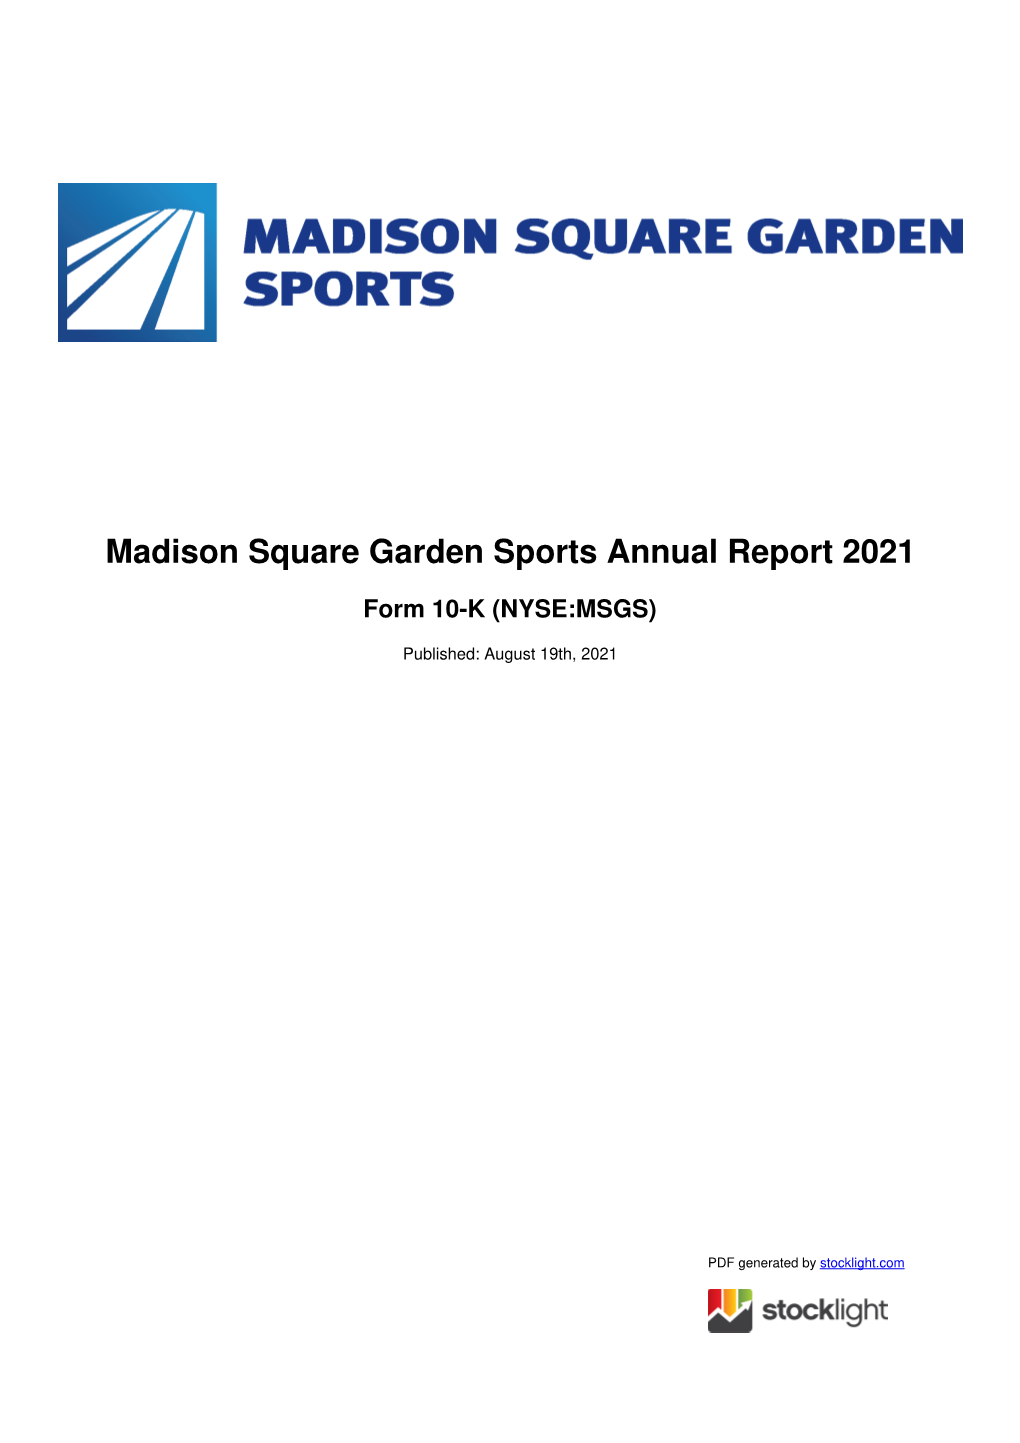 Madison Square Garden Sports Annual Report 2021